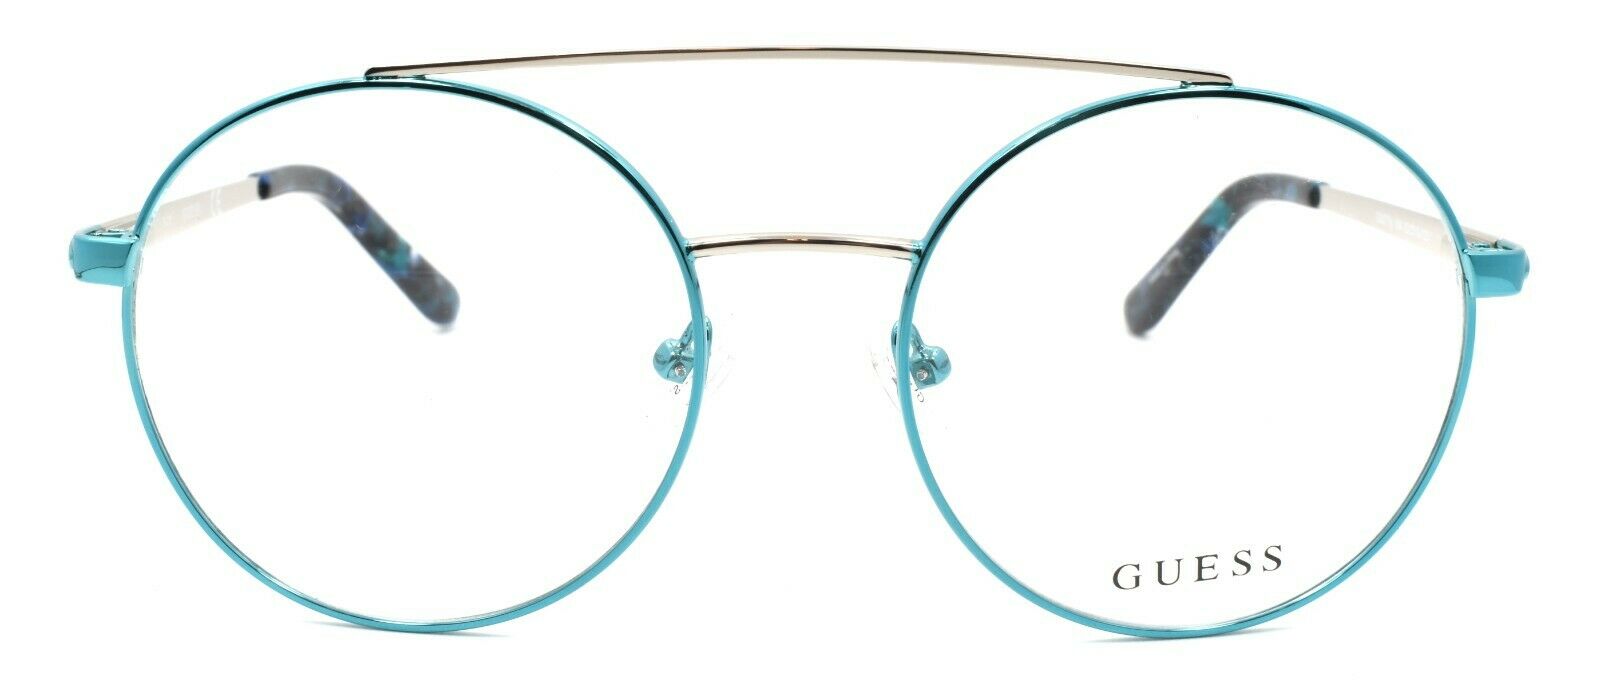 2-GUESS GU2714 084 Women's Eyeglasses Frames Aviator 52-18-135 Shiny Light Blue-889214034120-IKSpecs